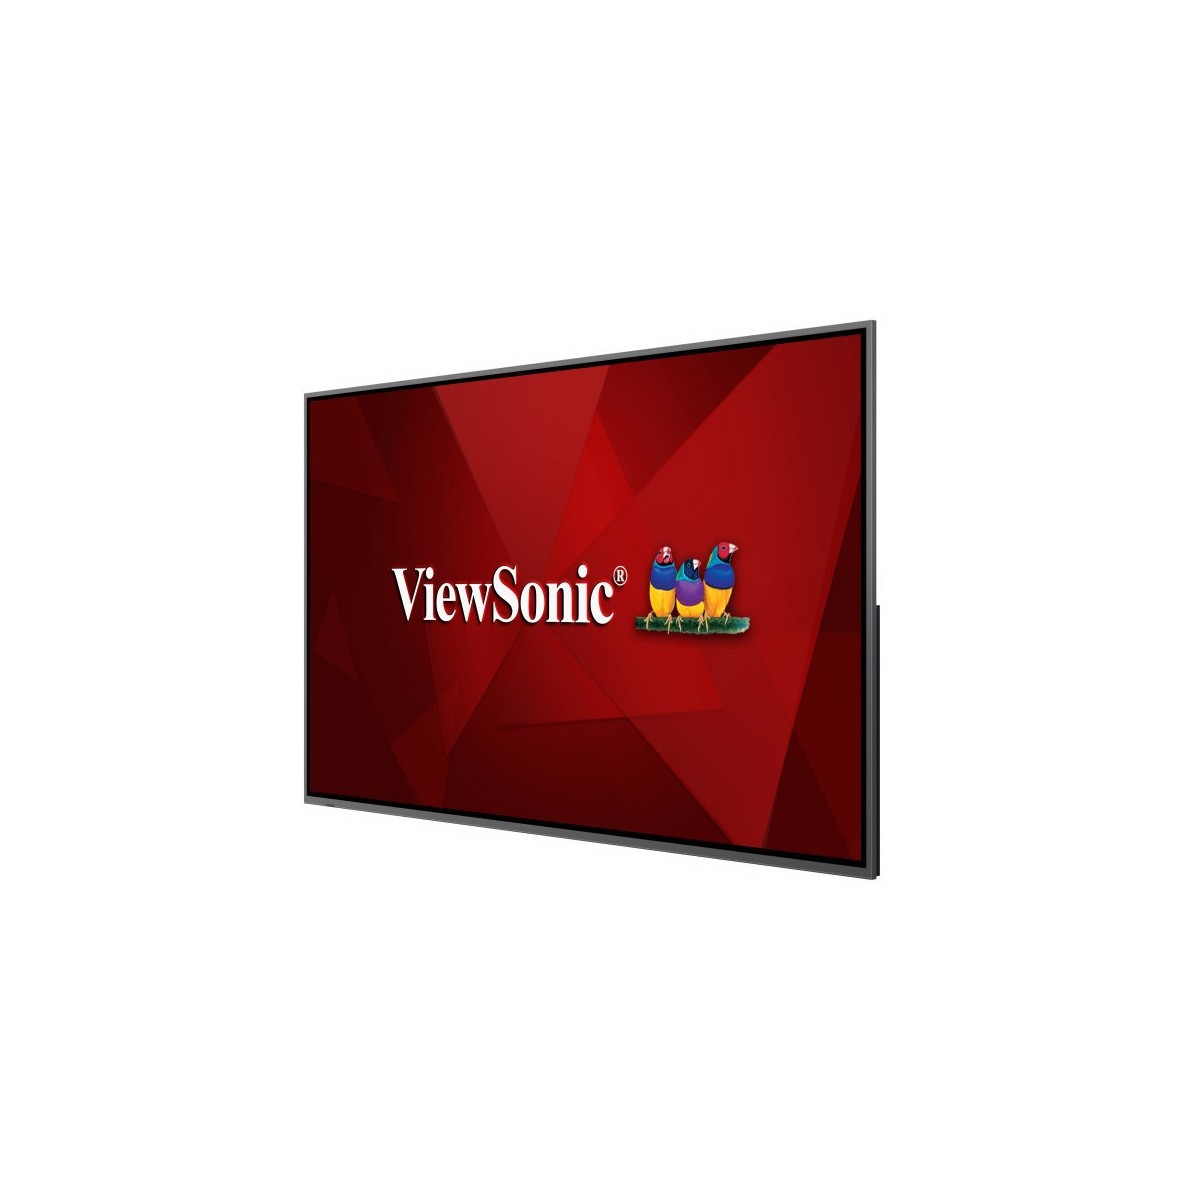 ViewSonic CDE8620 - 2.18 m (86) - LCD - 3840 x 2160 pixels - 450 cd/m² - 4K Ultra HD - 16:9